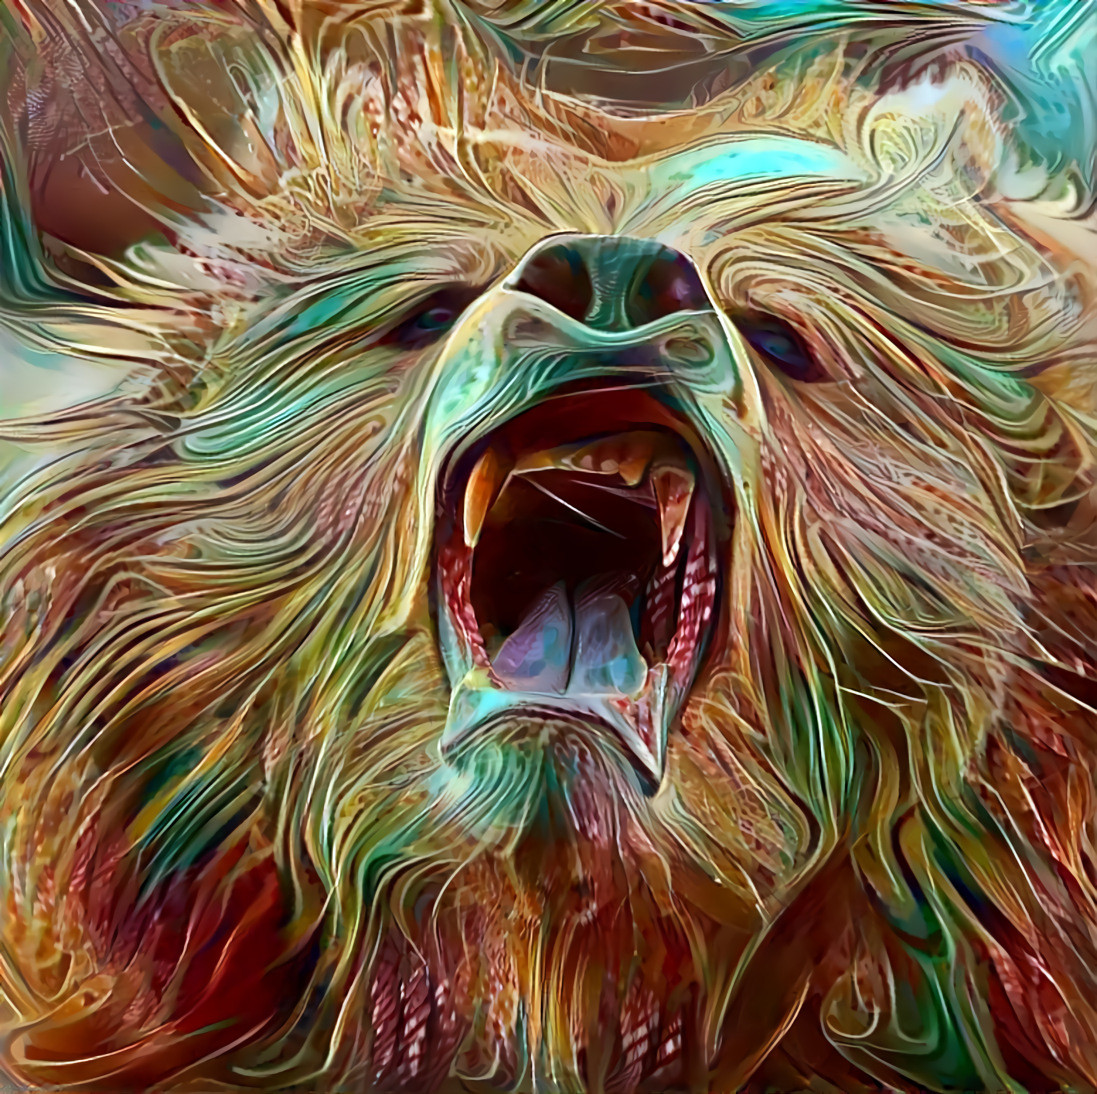 Roaring bear